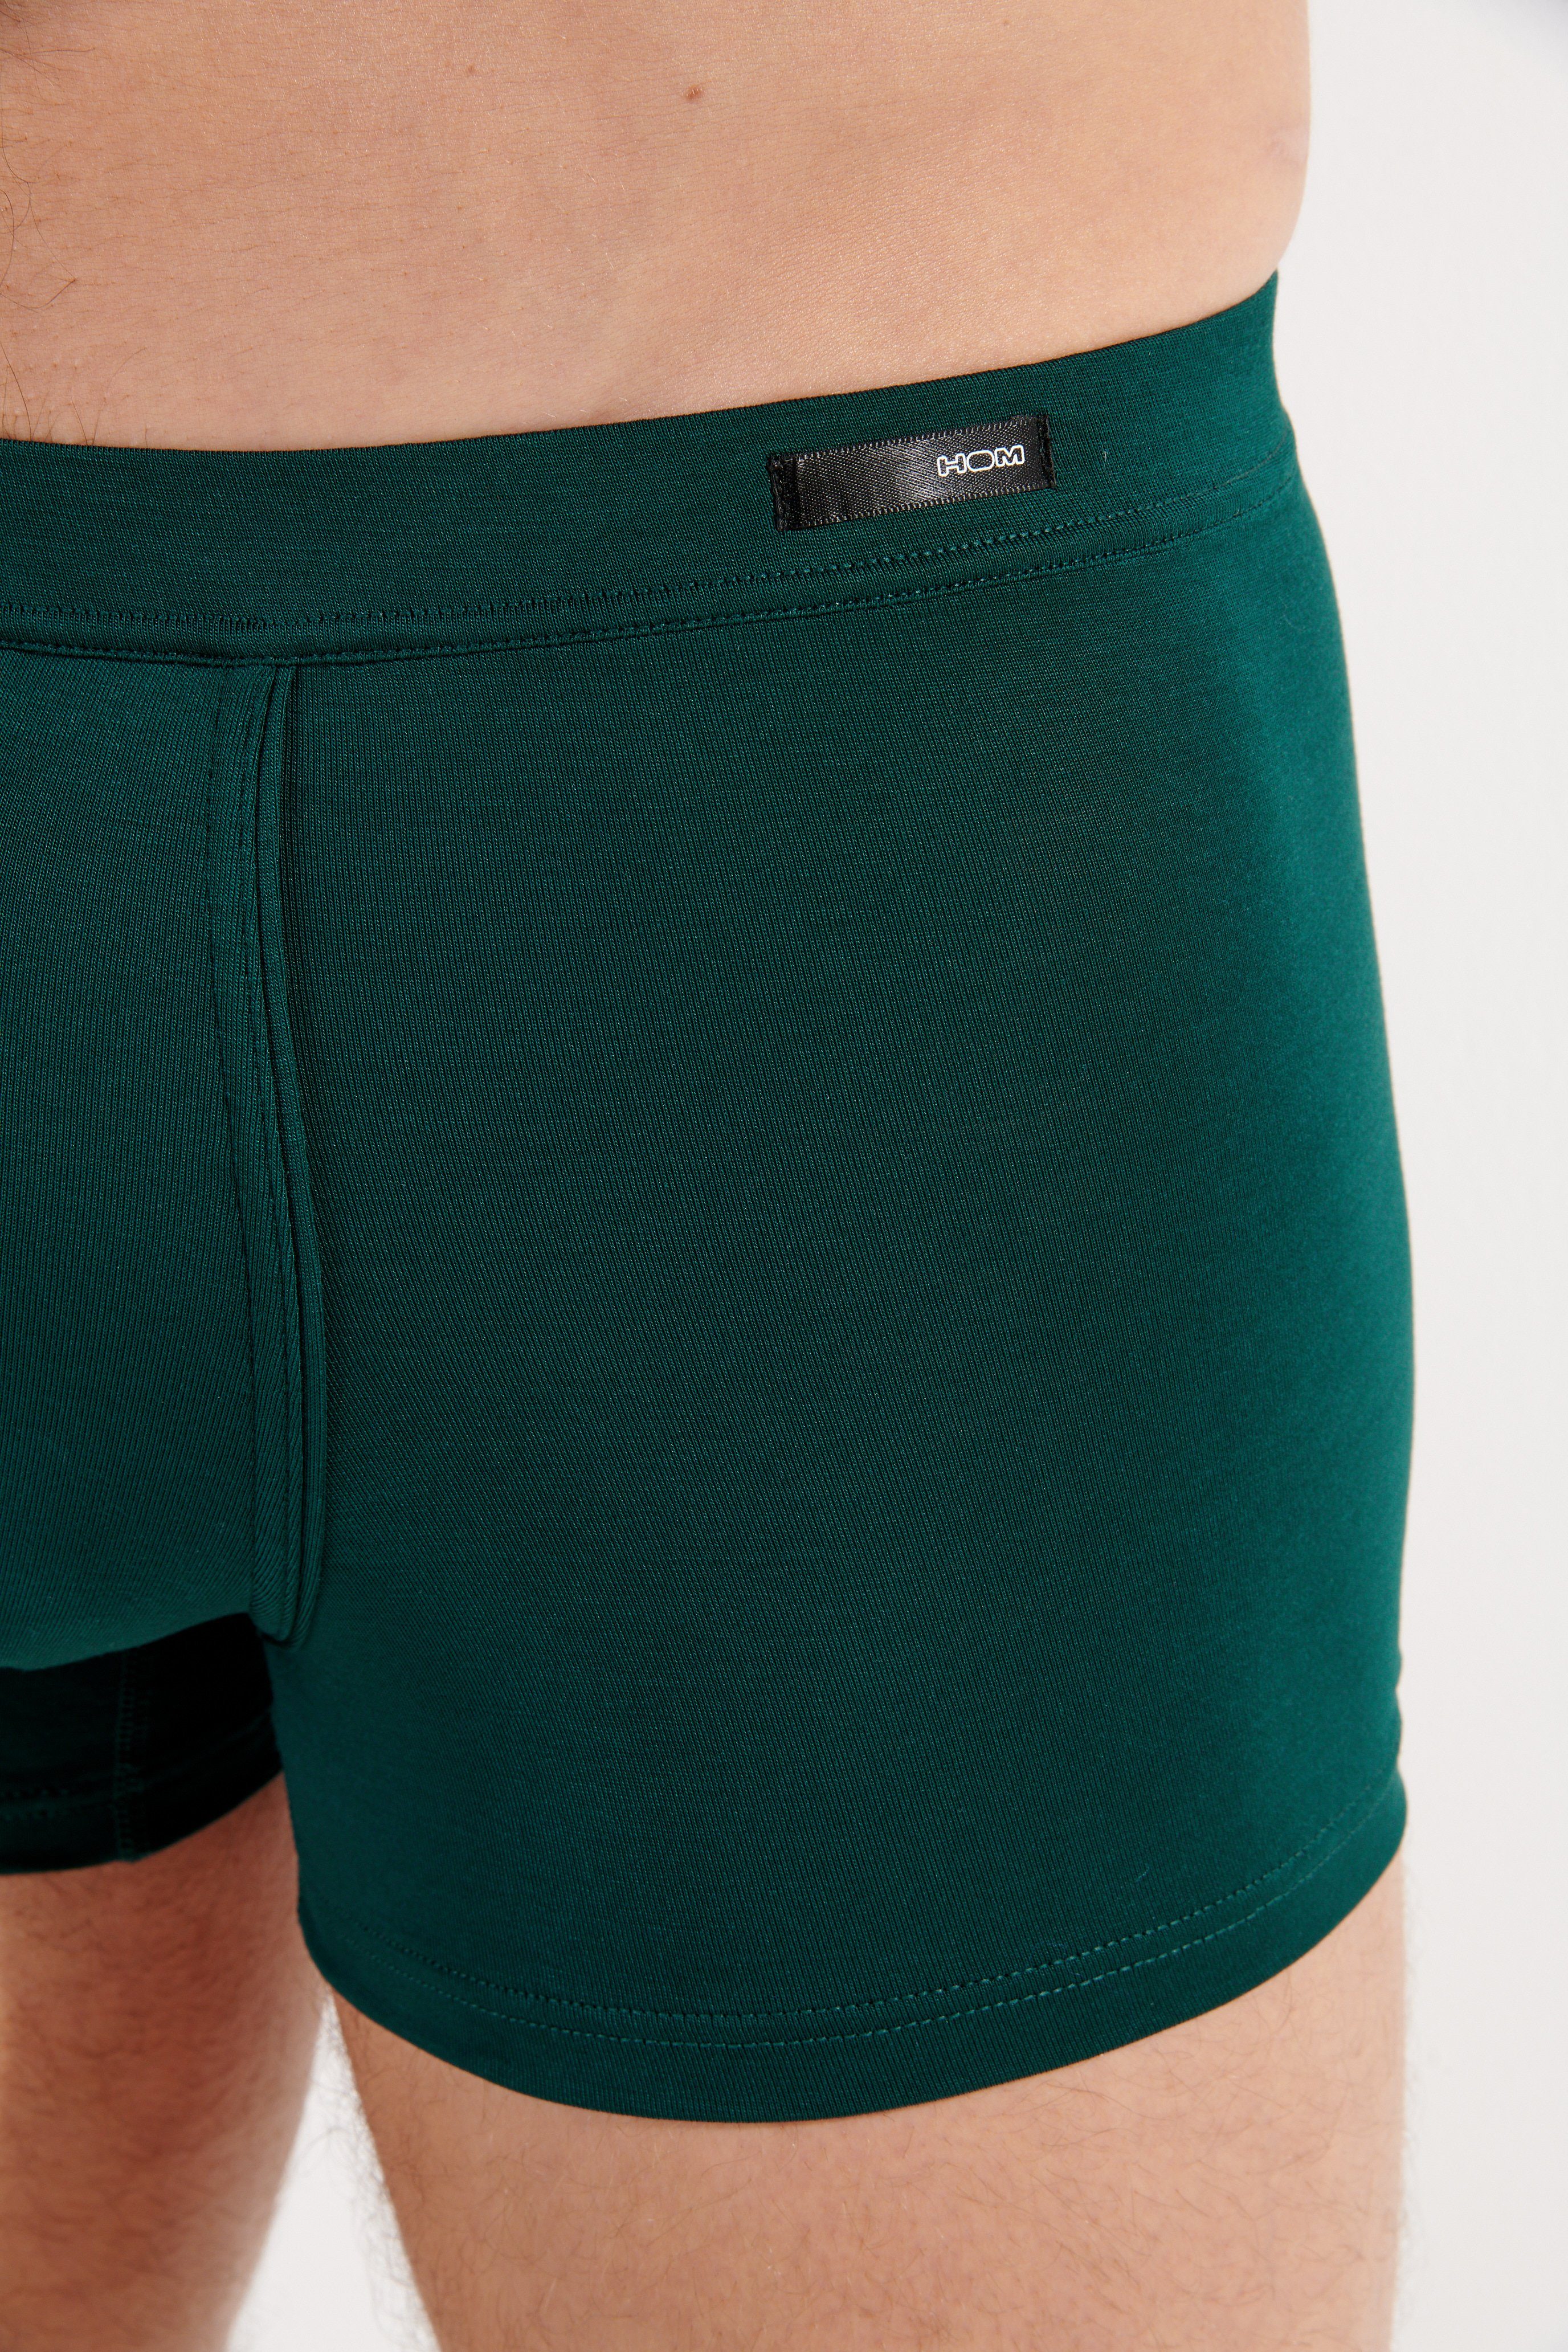 Hom Retro Comfort green Pants Tencel Boxer Soft HOM dark